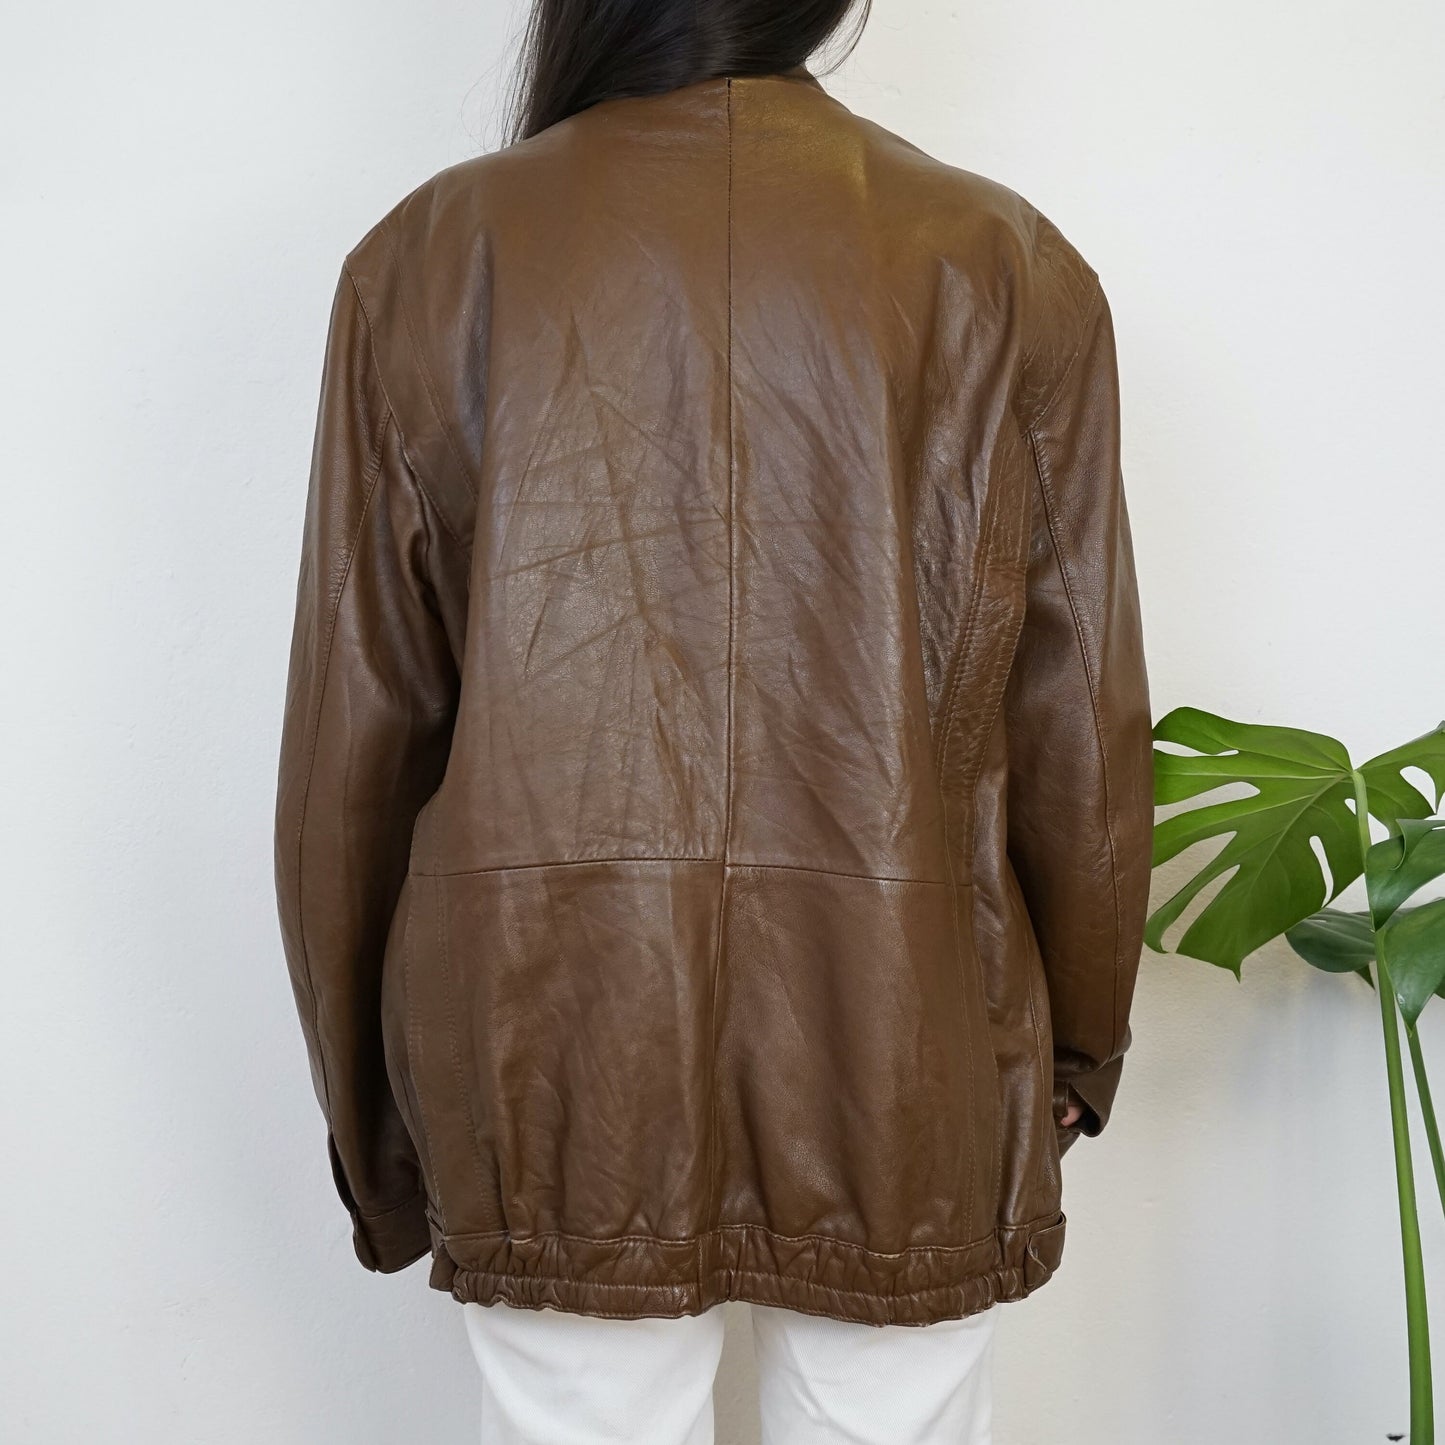 Vintage brown leather jacket Size L